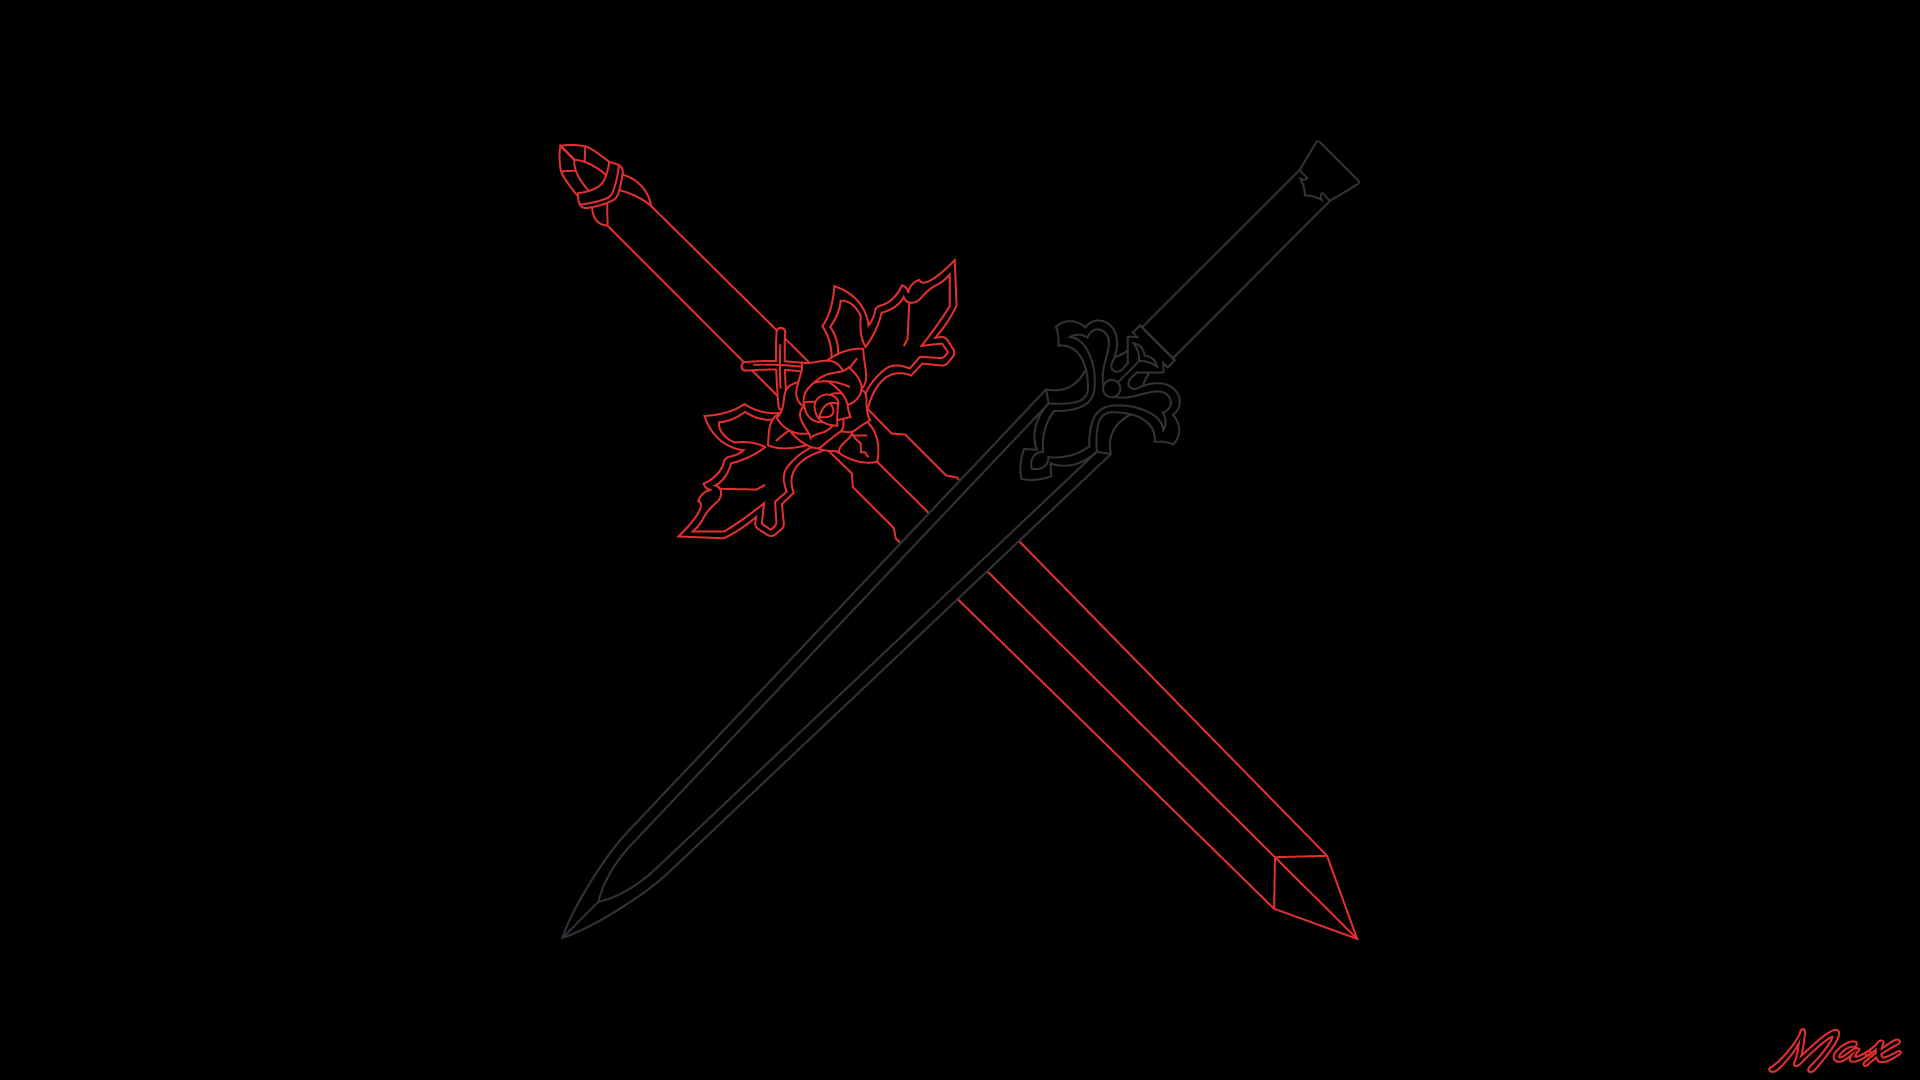 Night Sky Sword Sword Art Online Red Rose Sword Sword Art Online 1920x1080